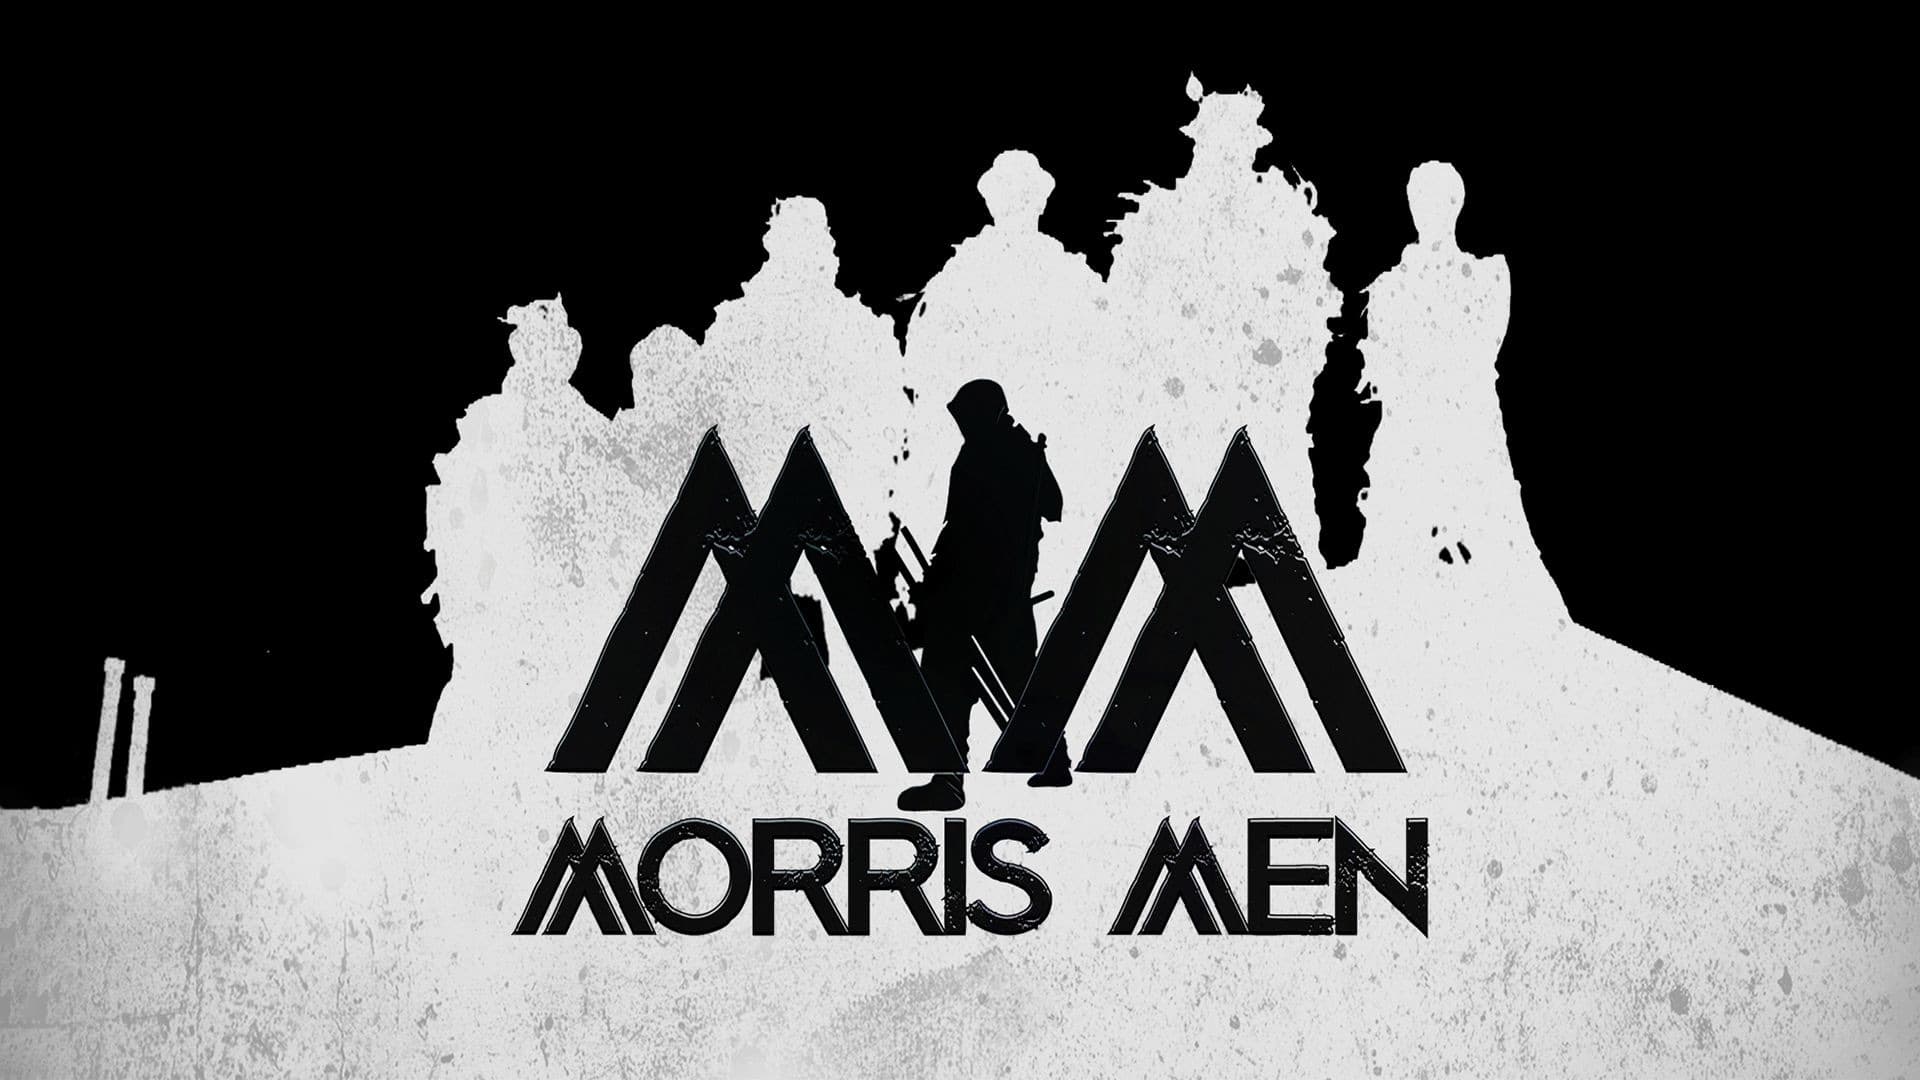 Morris Men - film